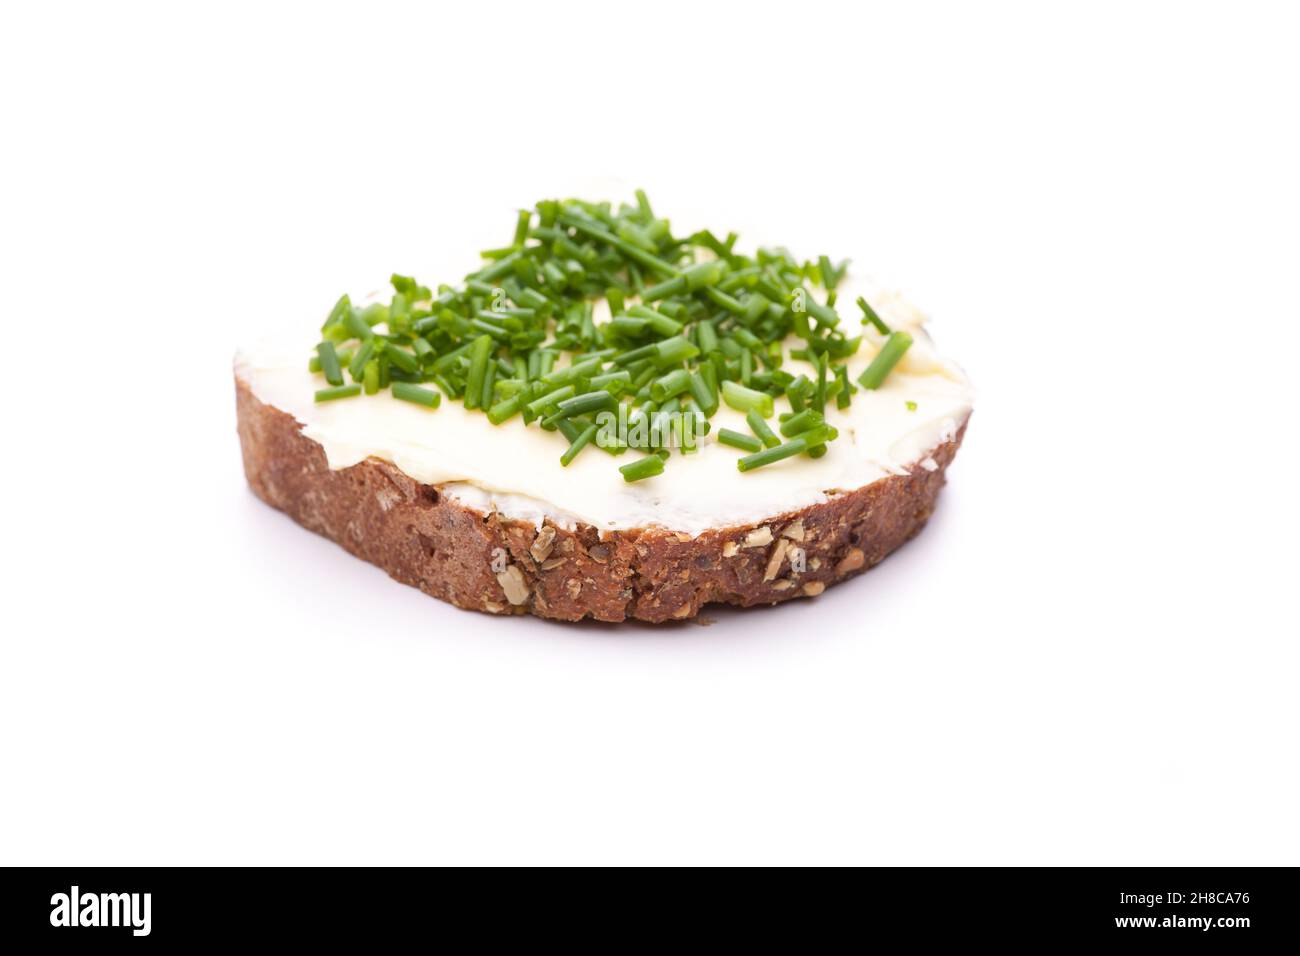 Burro pane con erba cipollina isolato su sfondo bianco Foto Stock